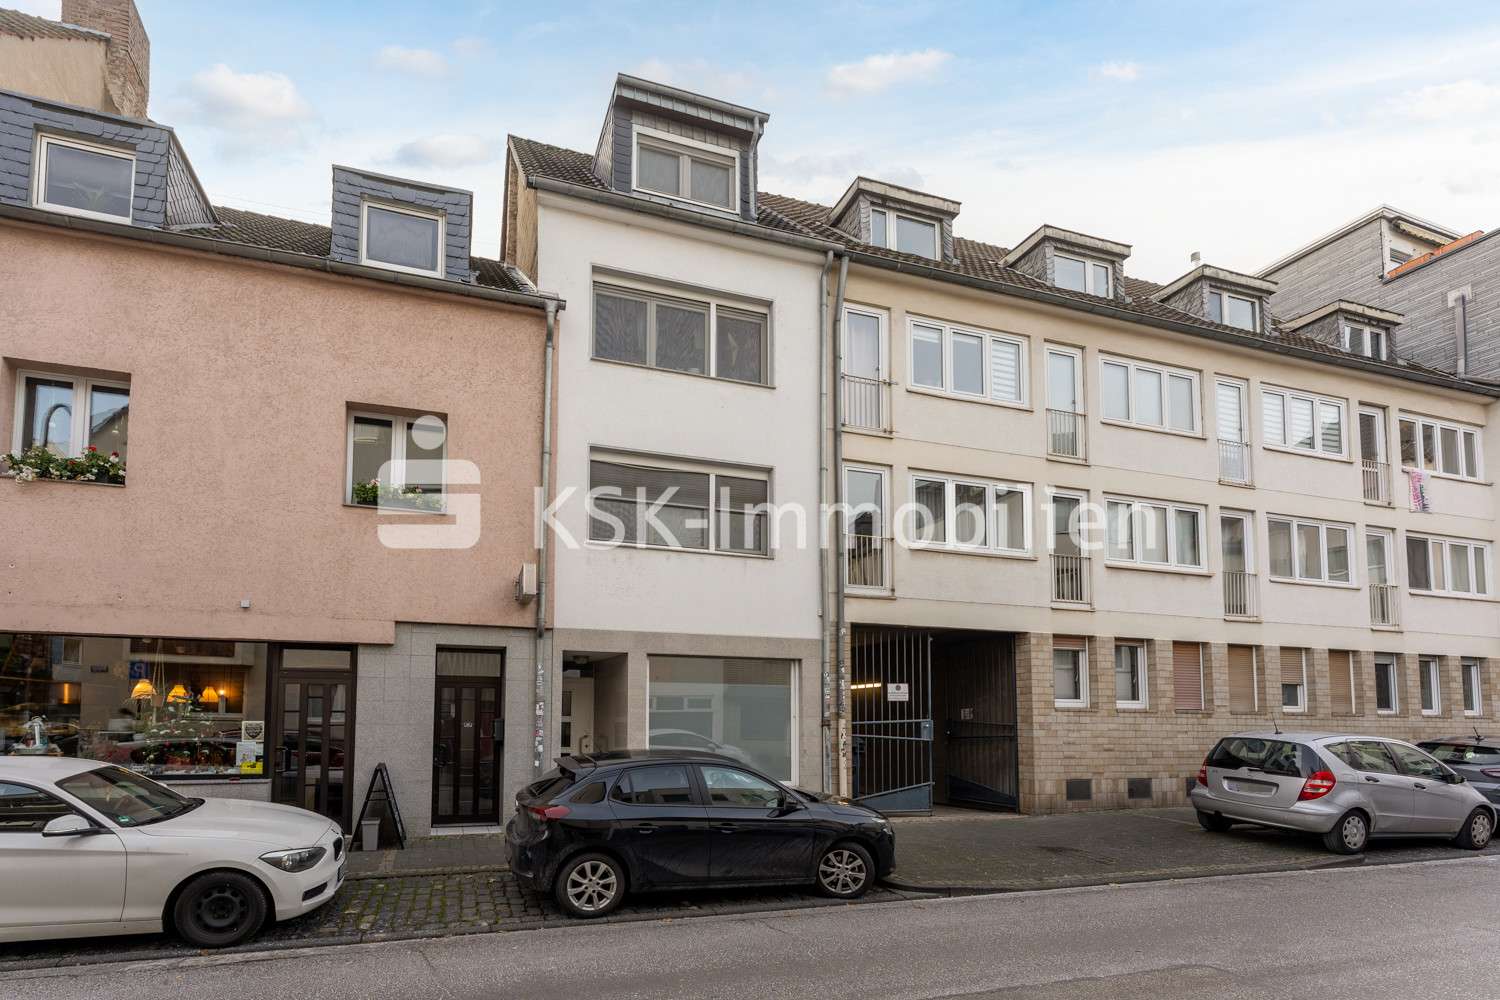 95148 Außenaufnahme - Mehrfamilienhaus in 50668 Köln mit 152m² als Kapitalanlage günstig kaufen